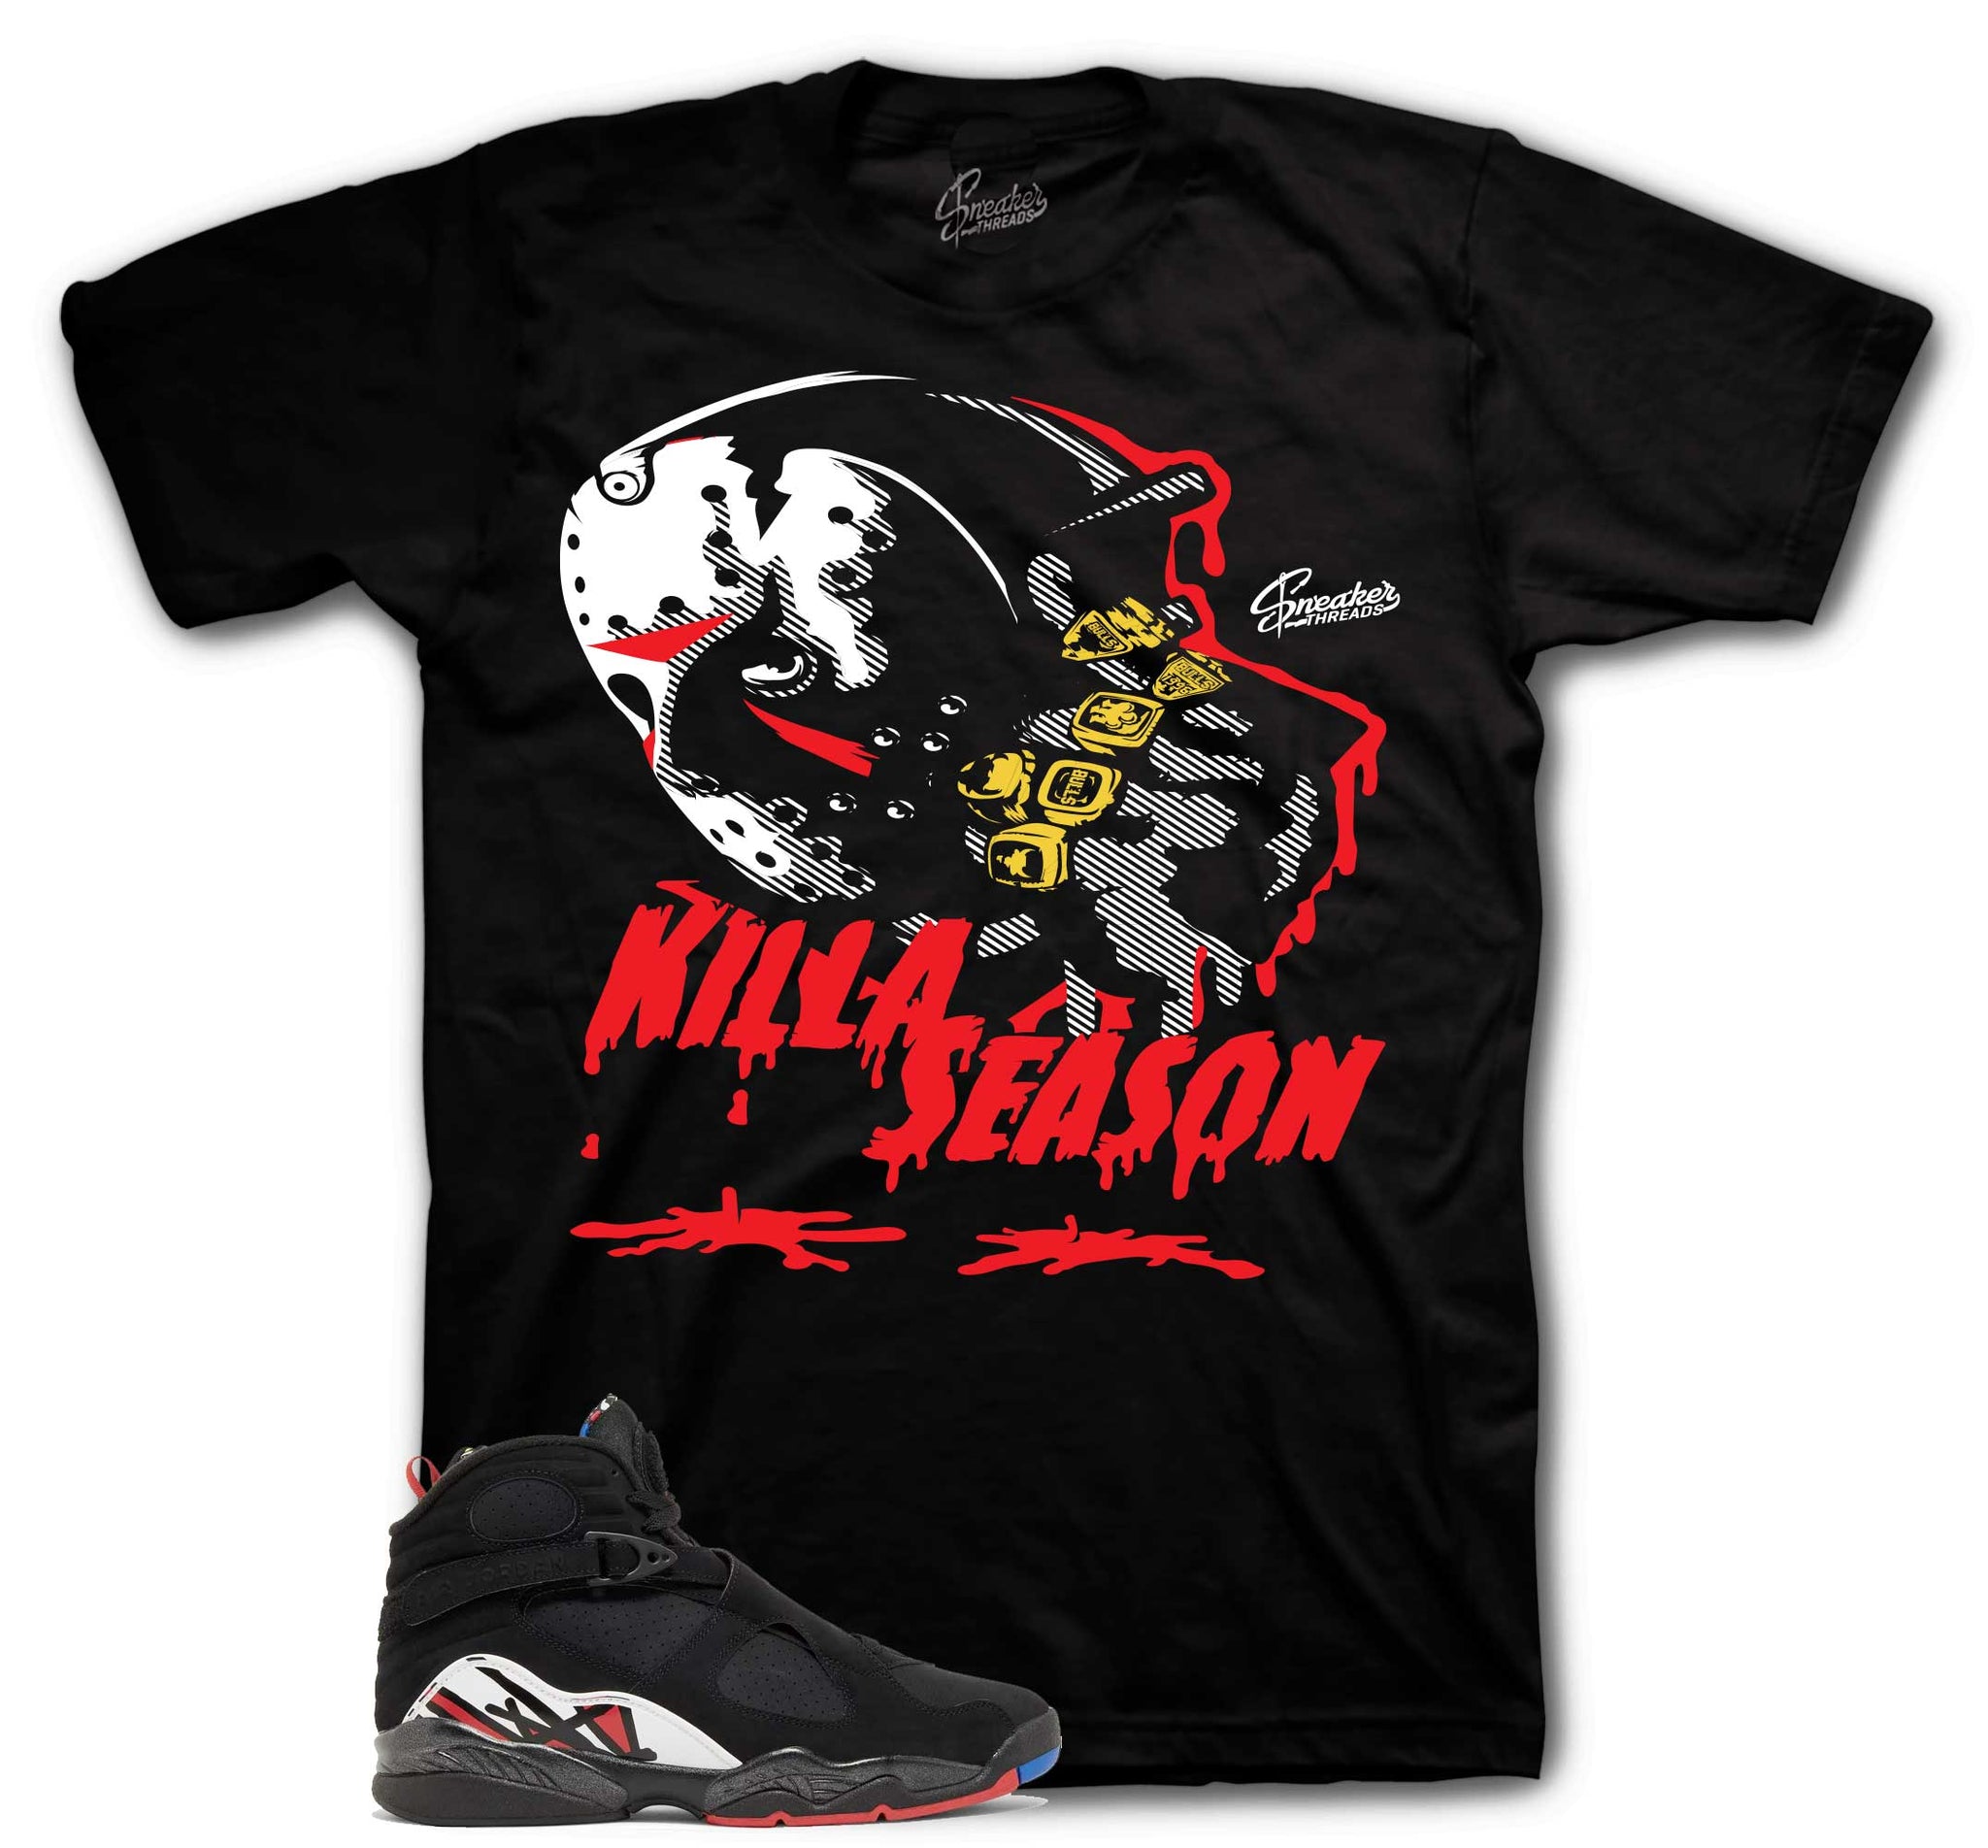 Retro 8 Playoffs Shirt - Killa Season - Black